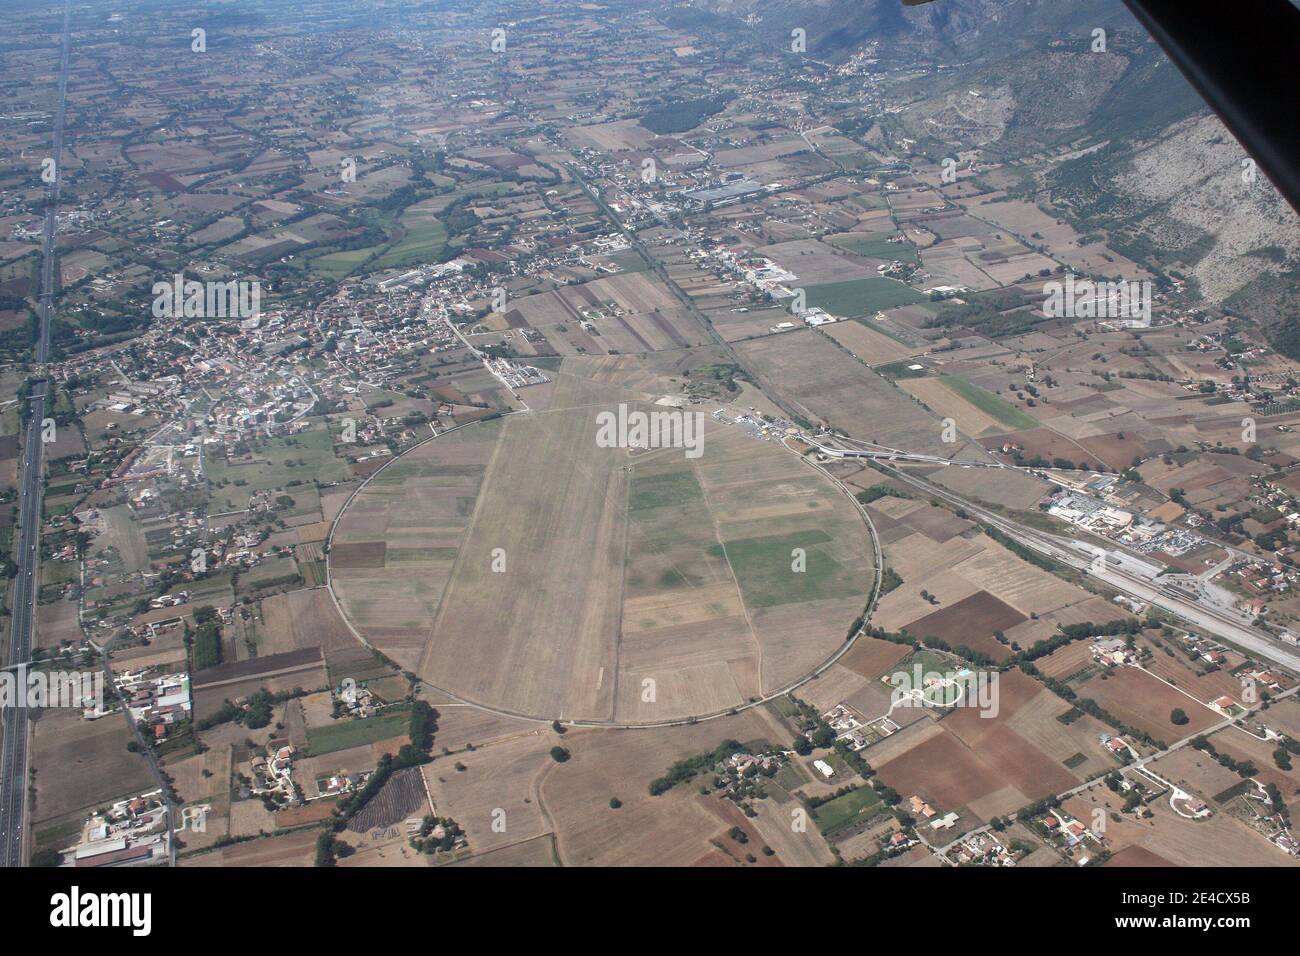 Aquino, Italia - 28 agosto 2008: Veduta aerea della città di Aquino e dell'aeroporto Foto de stock